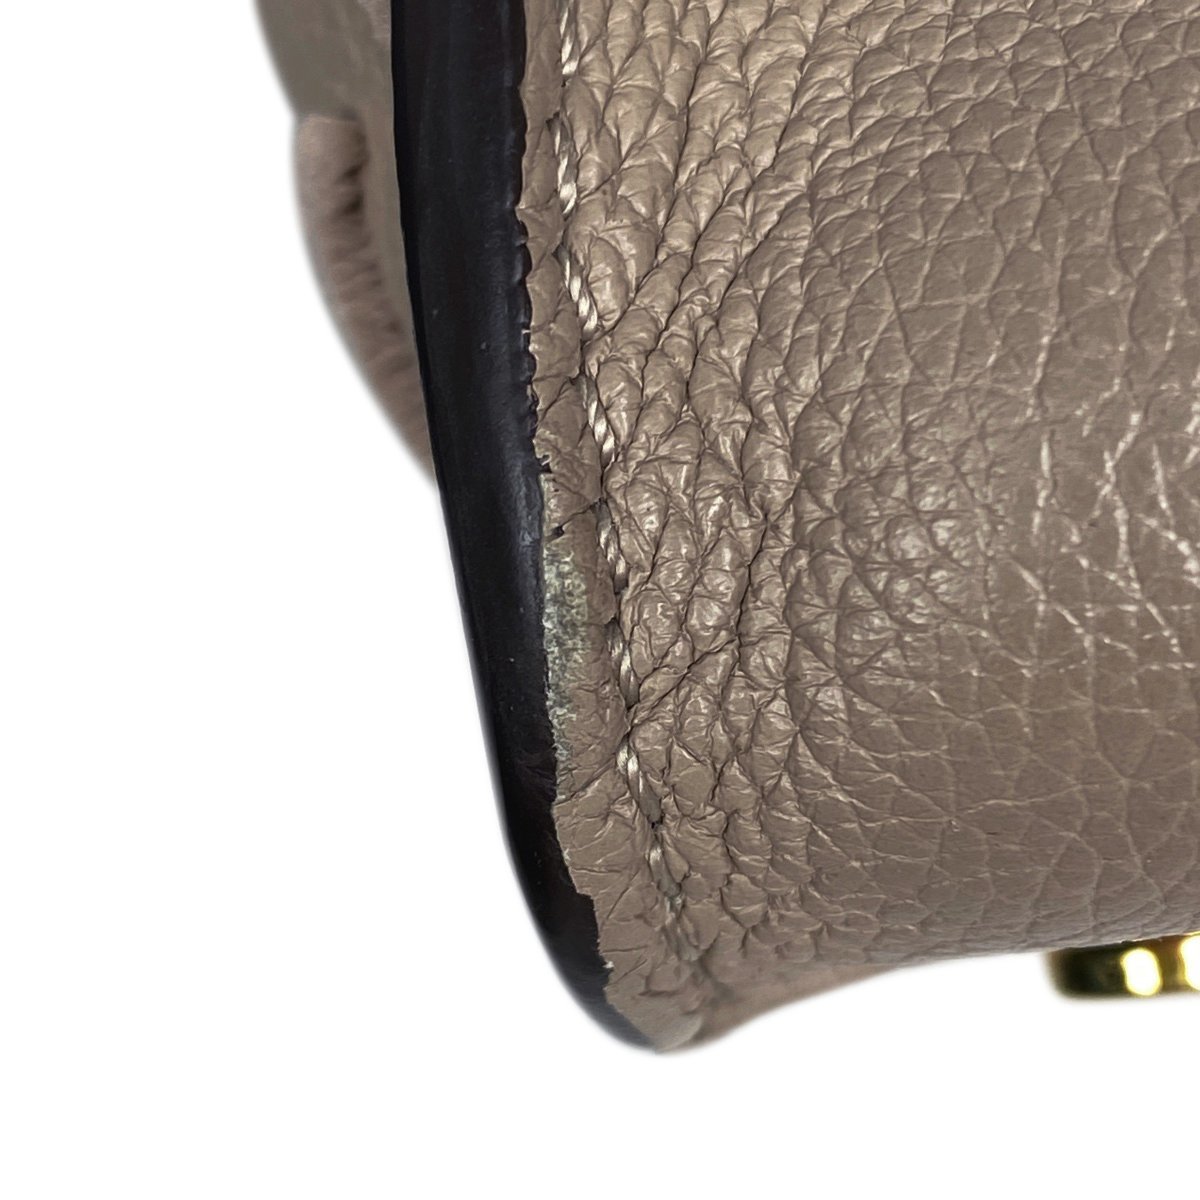  Louis * Vuitton Louis Vuitton on мой боковой 2WAY сумка на плечо ручная сумочка кожа галет M53825 женский [ б/у ]